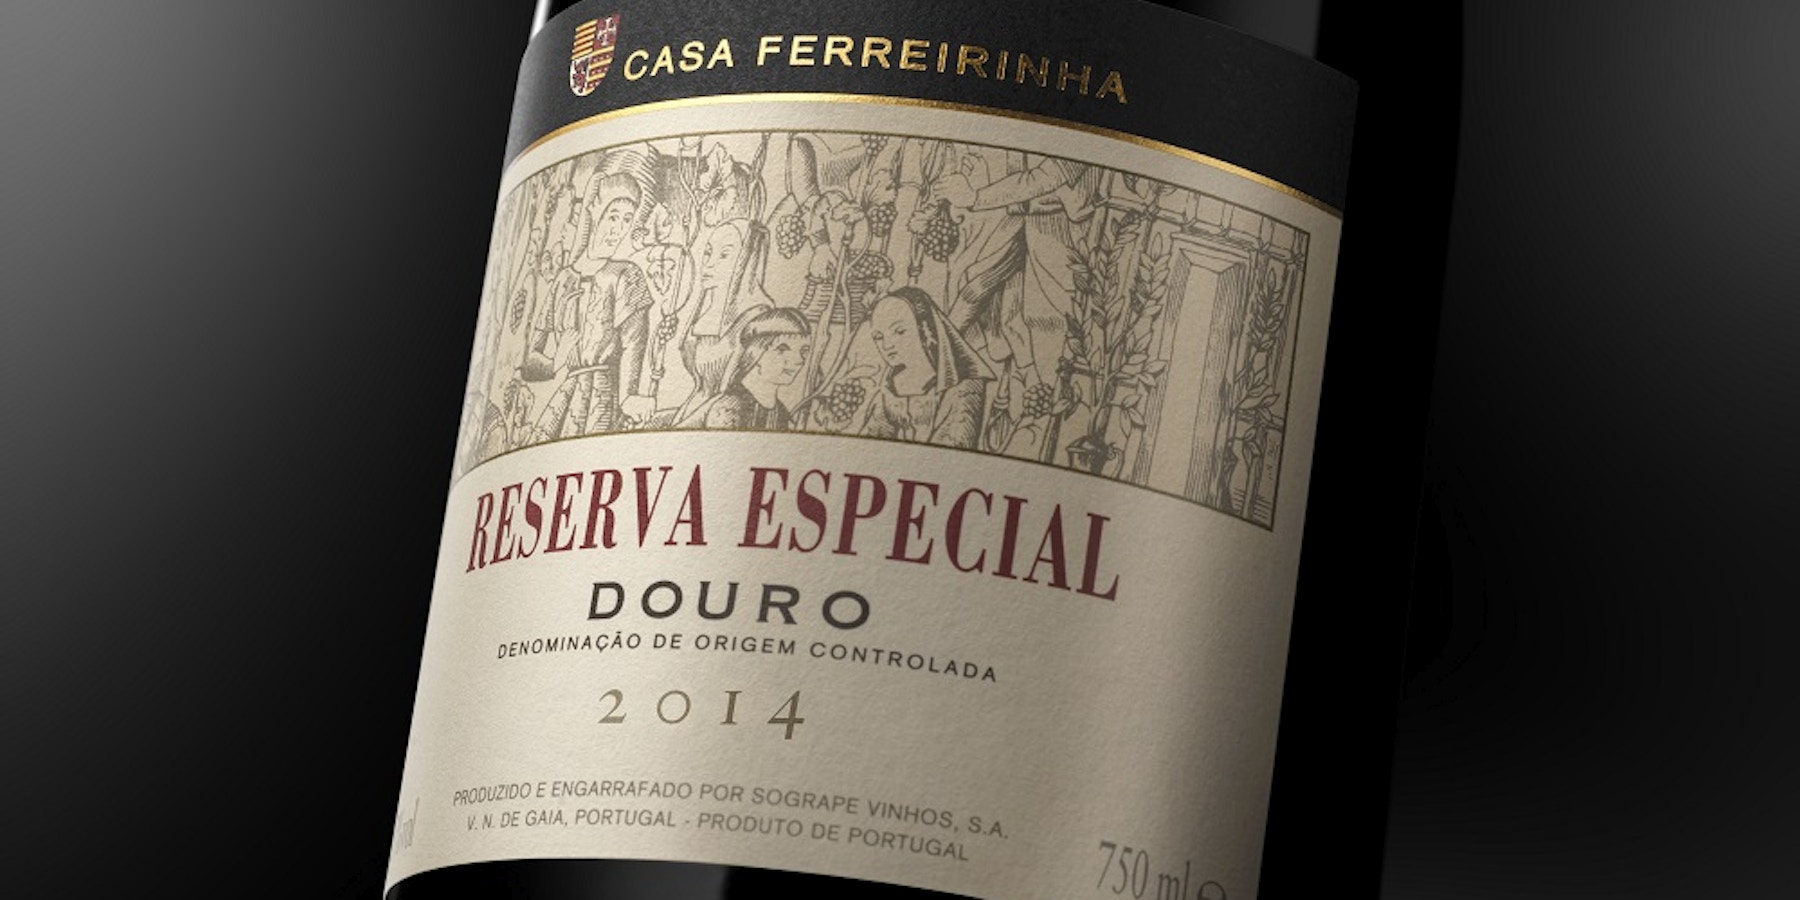 New vintage of Casa Ferreirinha's red